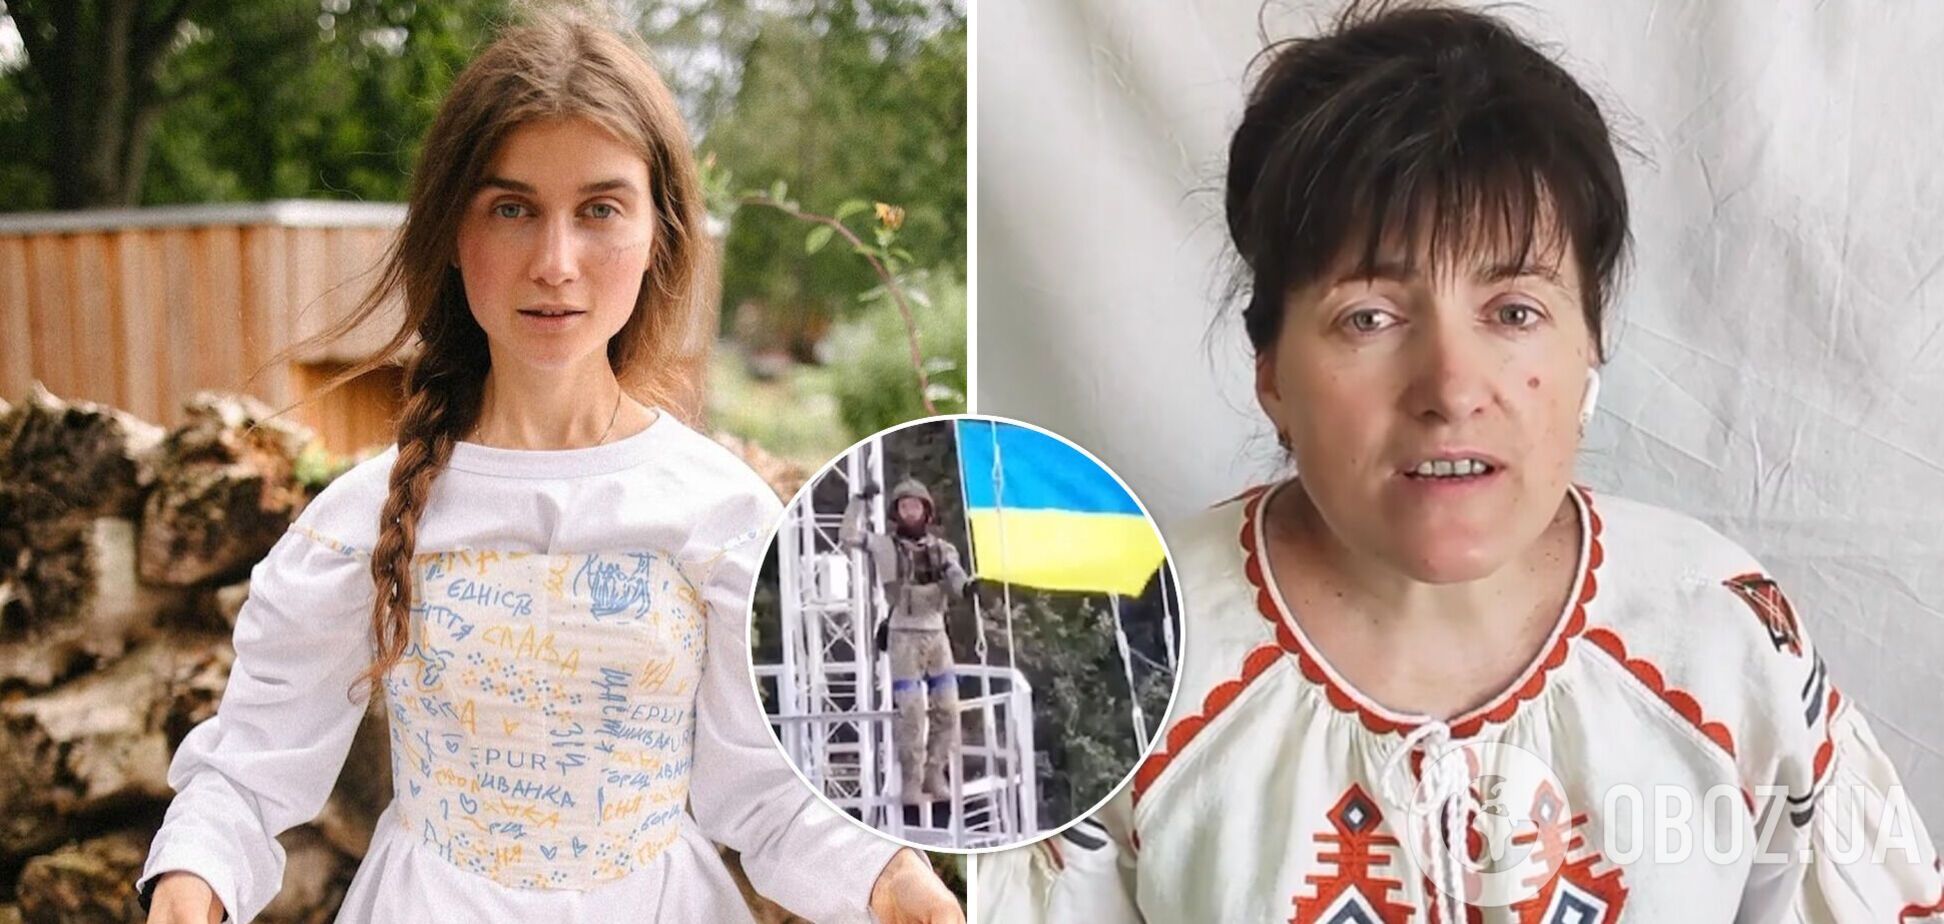 Jerry Heil вместе со своей мамой исполнила балладу об Украине: клип 'Не сестри' выбился в тренды YouTube